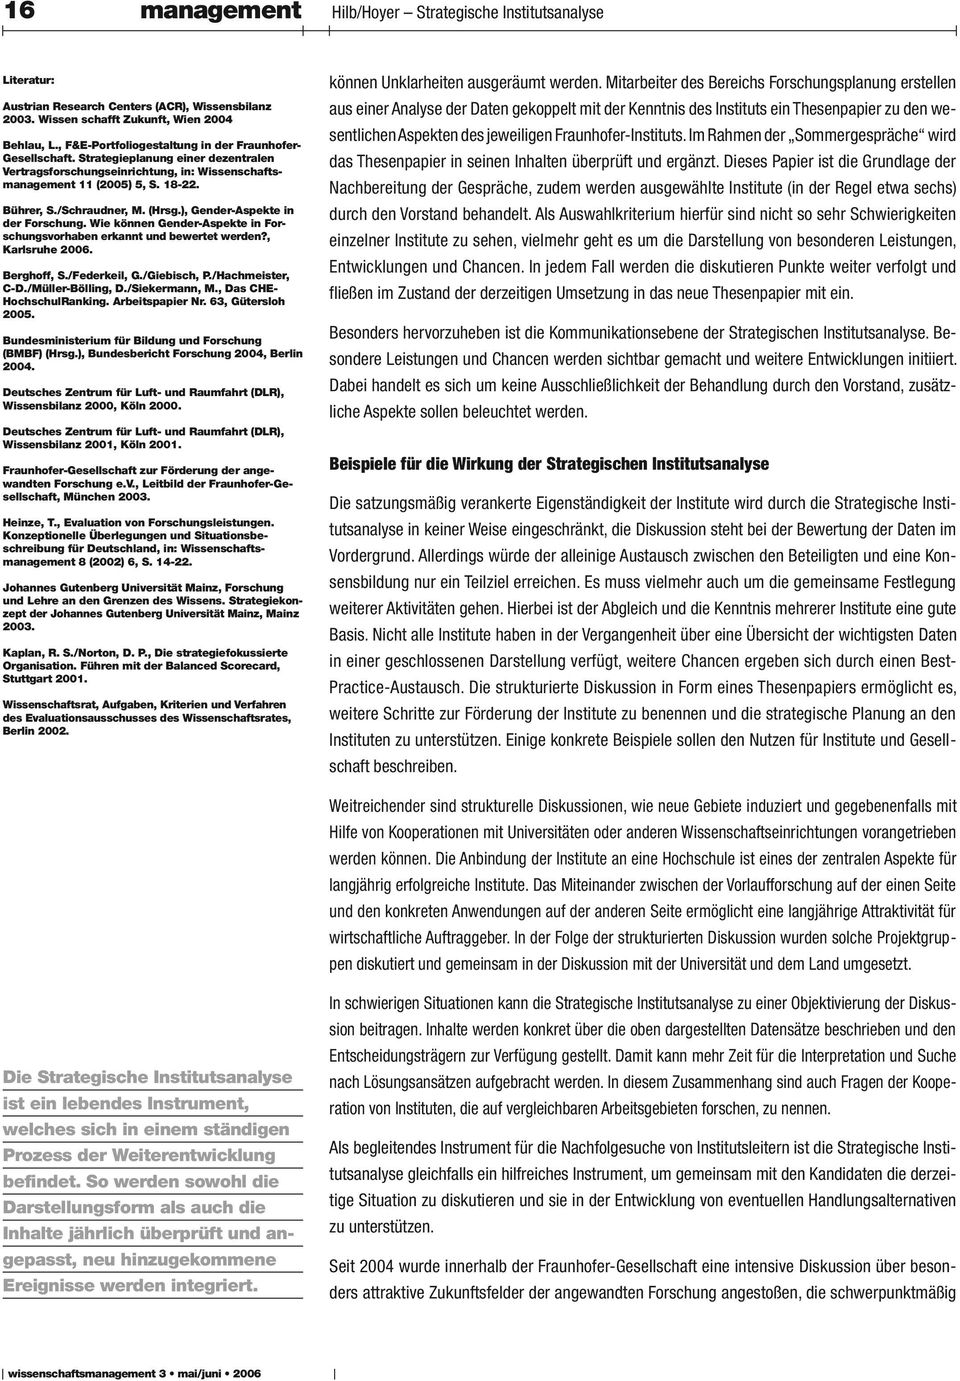 Wie können Gender-Aspekte in For schngsvorhaben erkannt nd bewertet werden?, Karlsrhe 26. Berghoff, S./Federkeil, G./Giebisch, P./Hachmeister, C-D./Müller-Bölling, D./Siekermann, M.